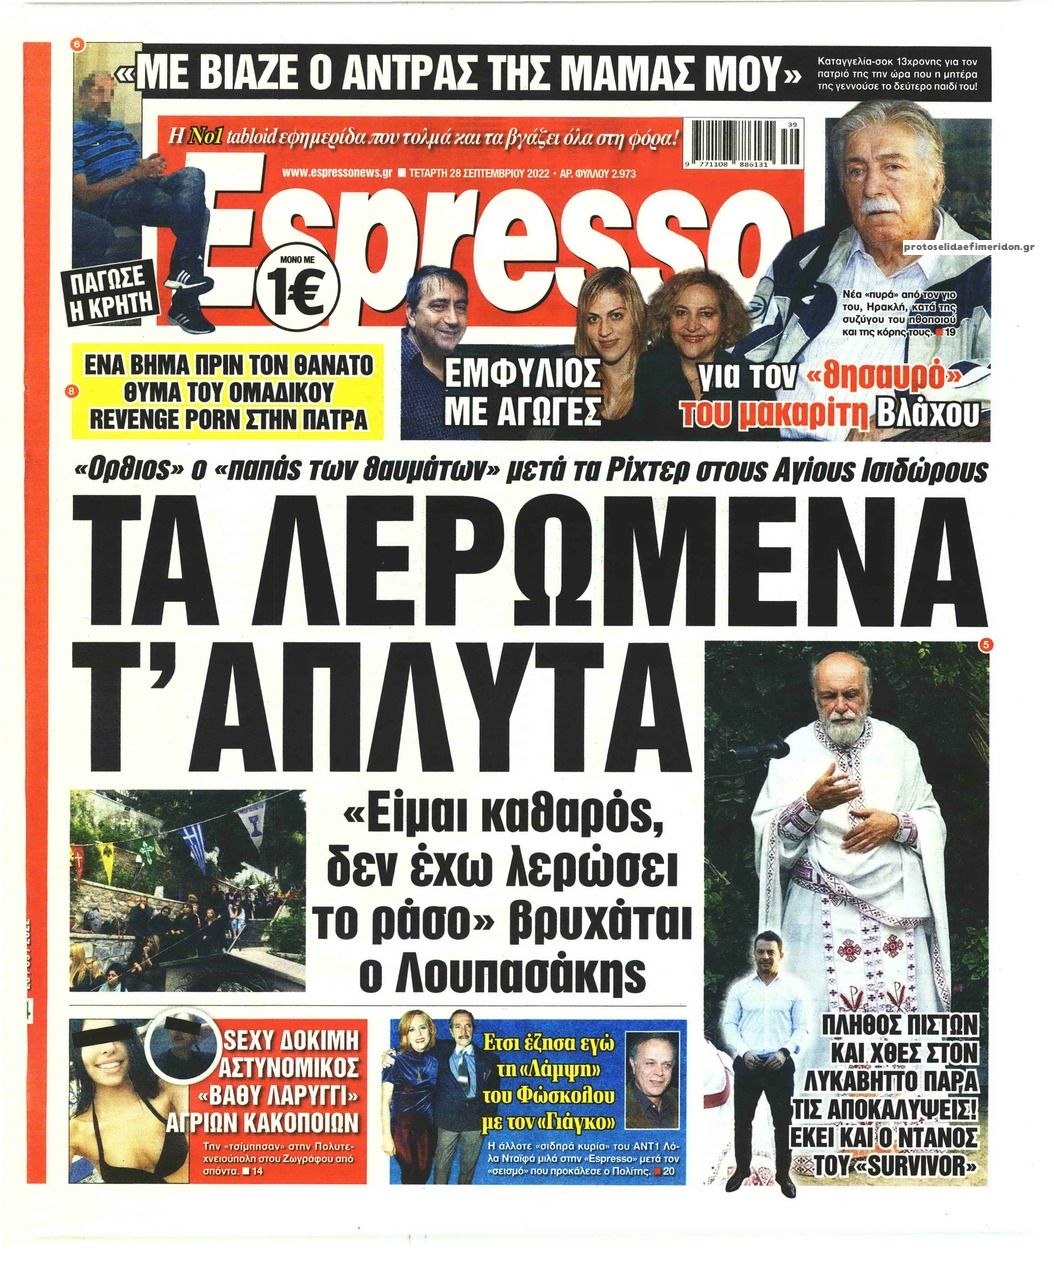 Πρωτοσέλιδο εφημερίδας Espresso